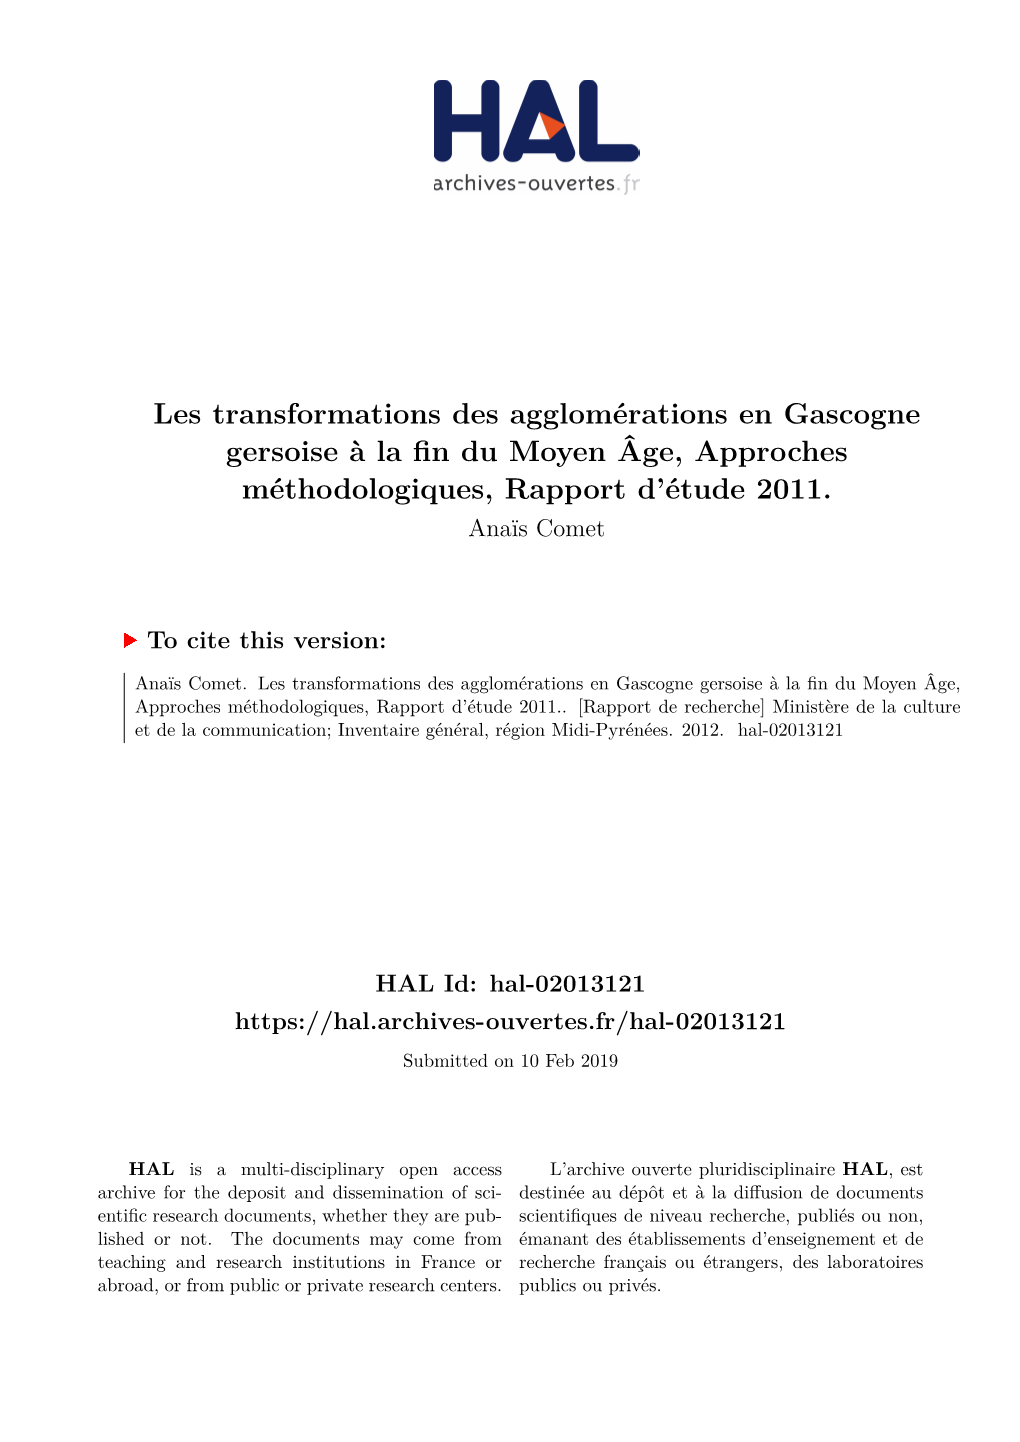 Les Transformations Des Agglomérations En Gascogne Gersoise À La Fin Du Moyen Âge, Approches Méthodologiques, Rapport D’Étude 2011